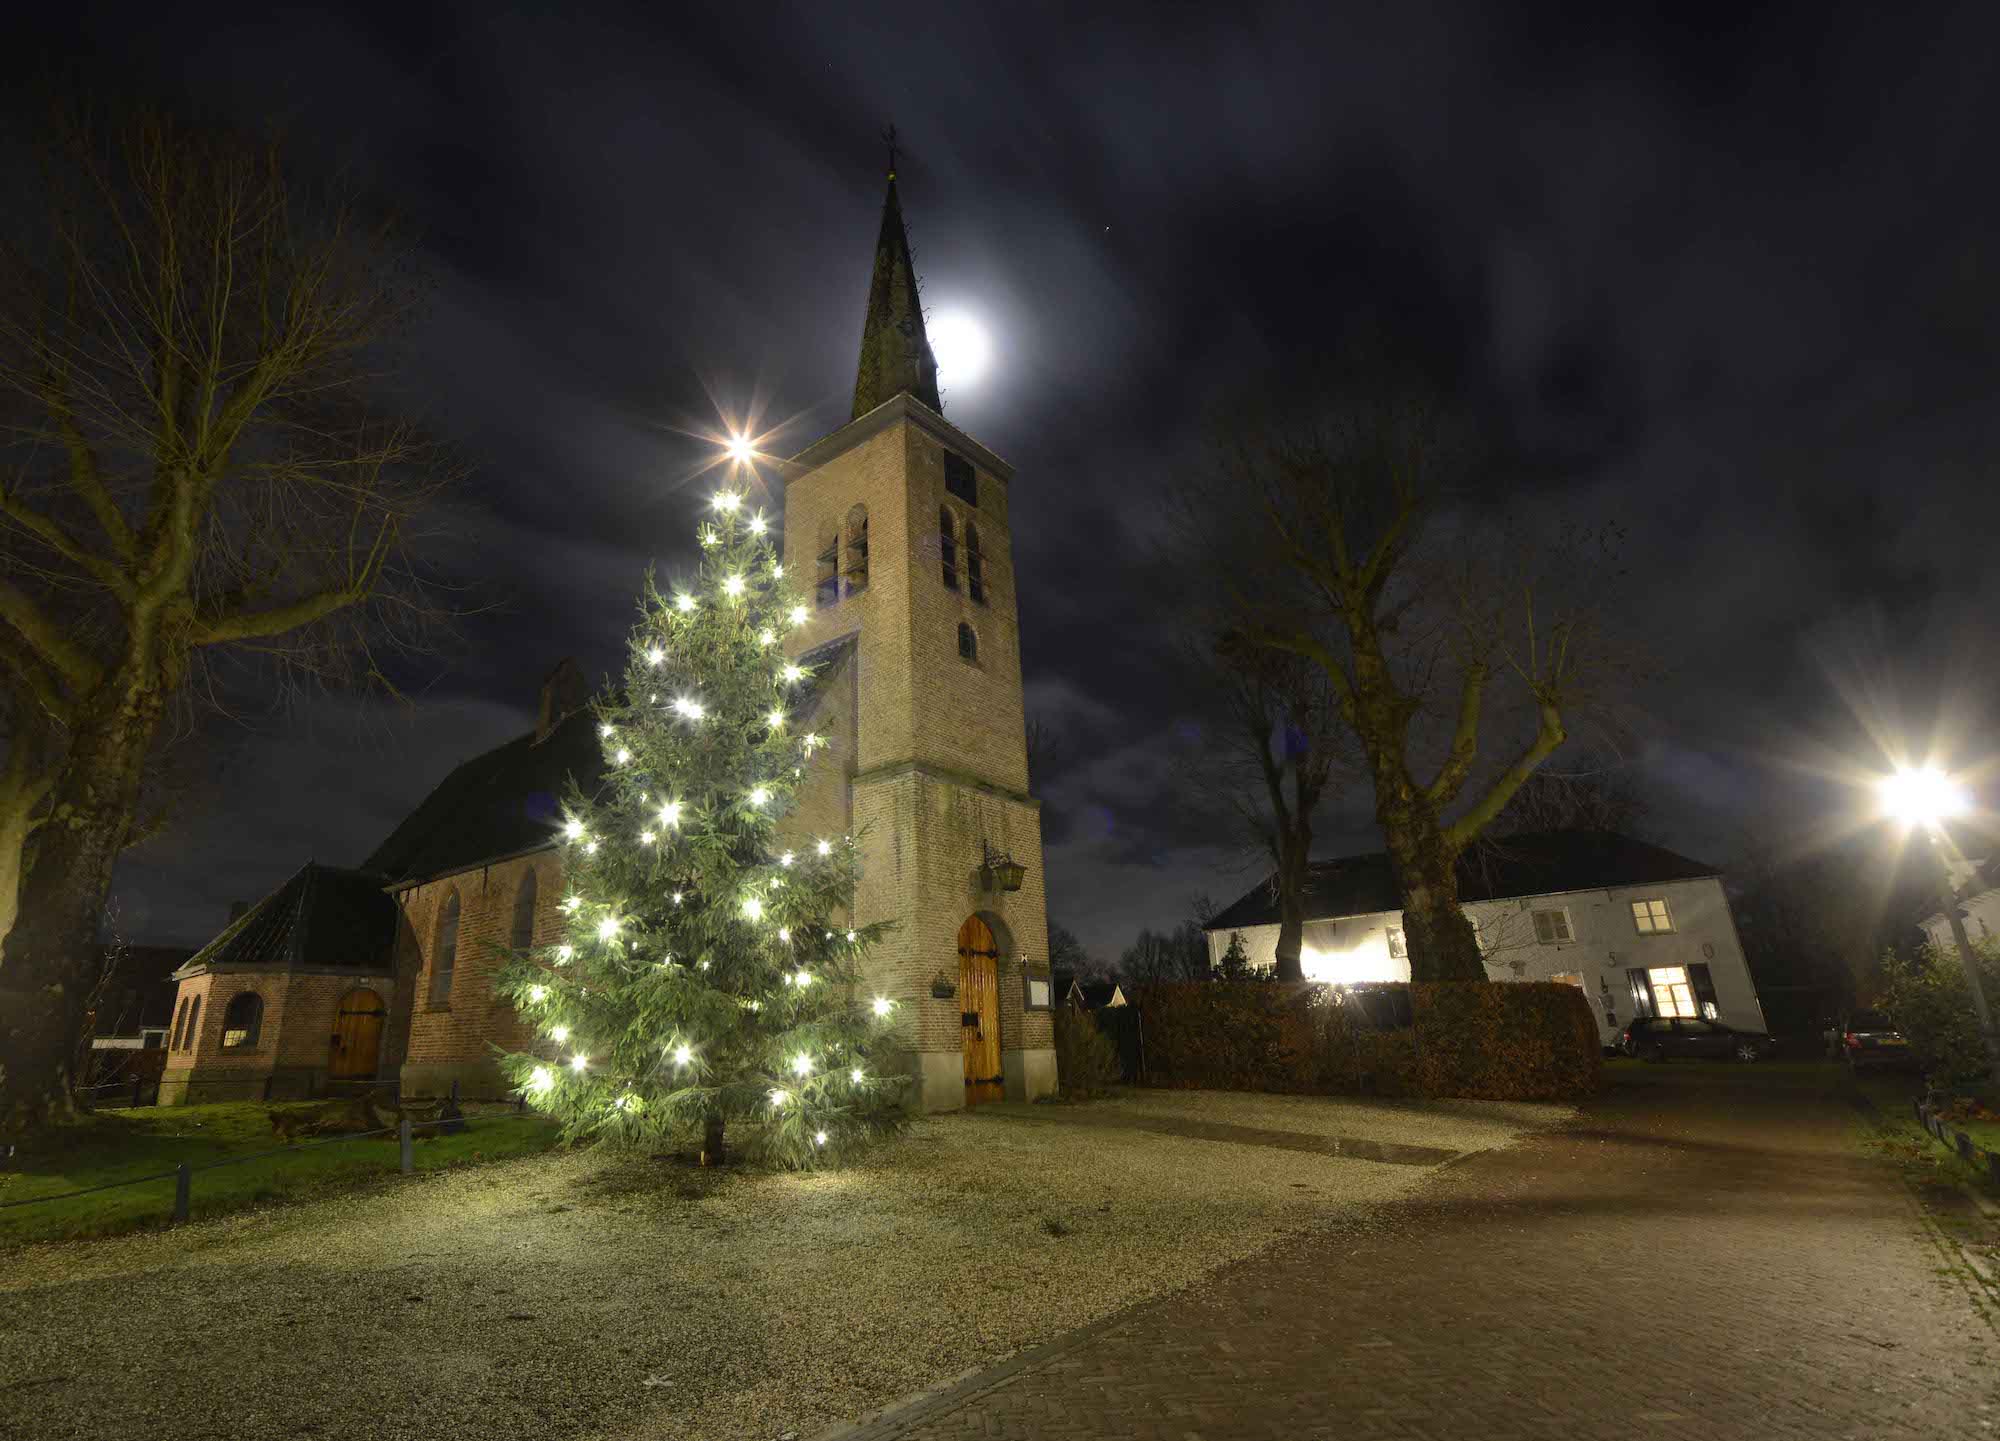 Donkere dagen voor kerst kerstboom bij kerk met maanlicht en kale bomen. Foto: Ton Timmer